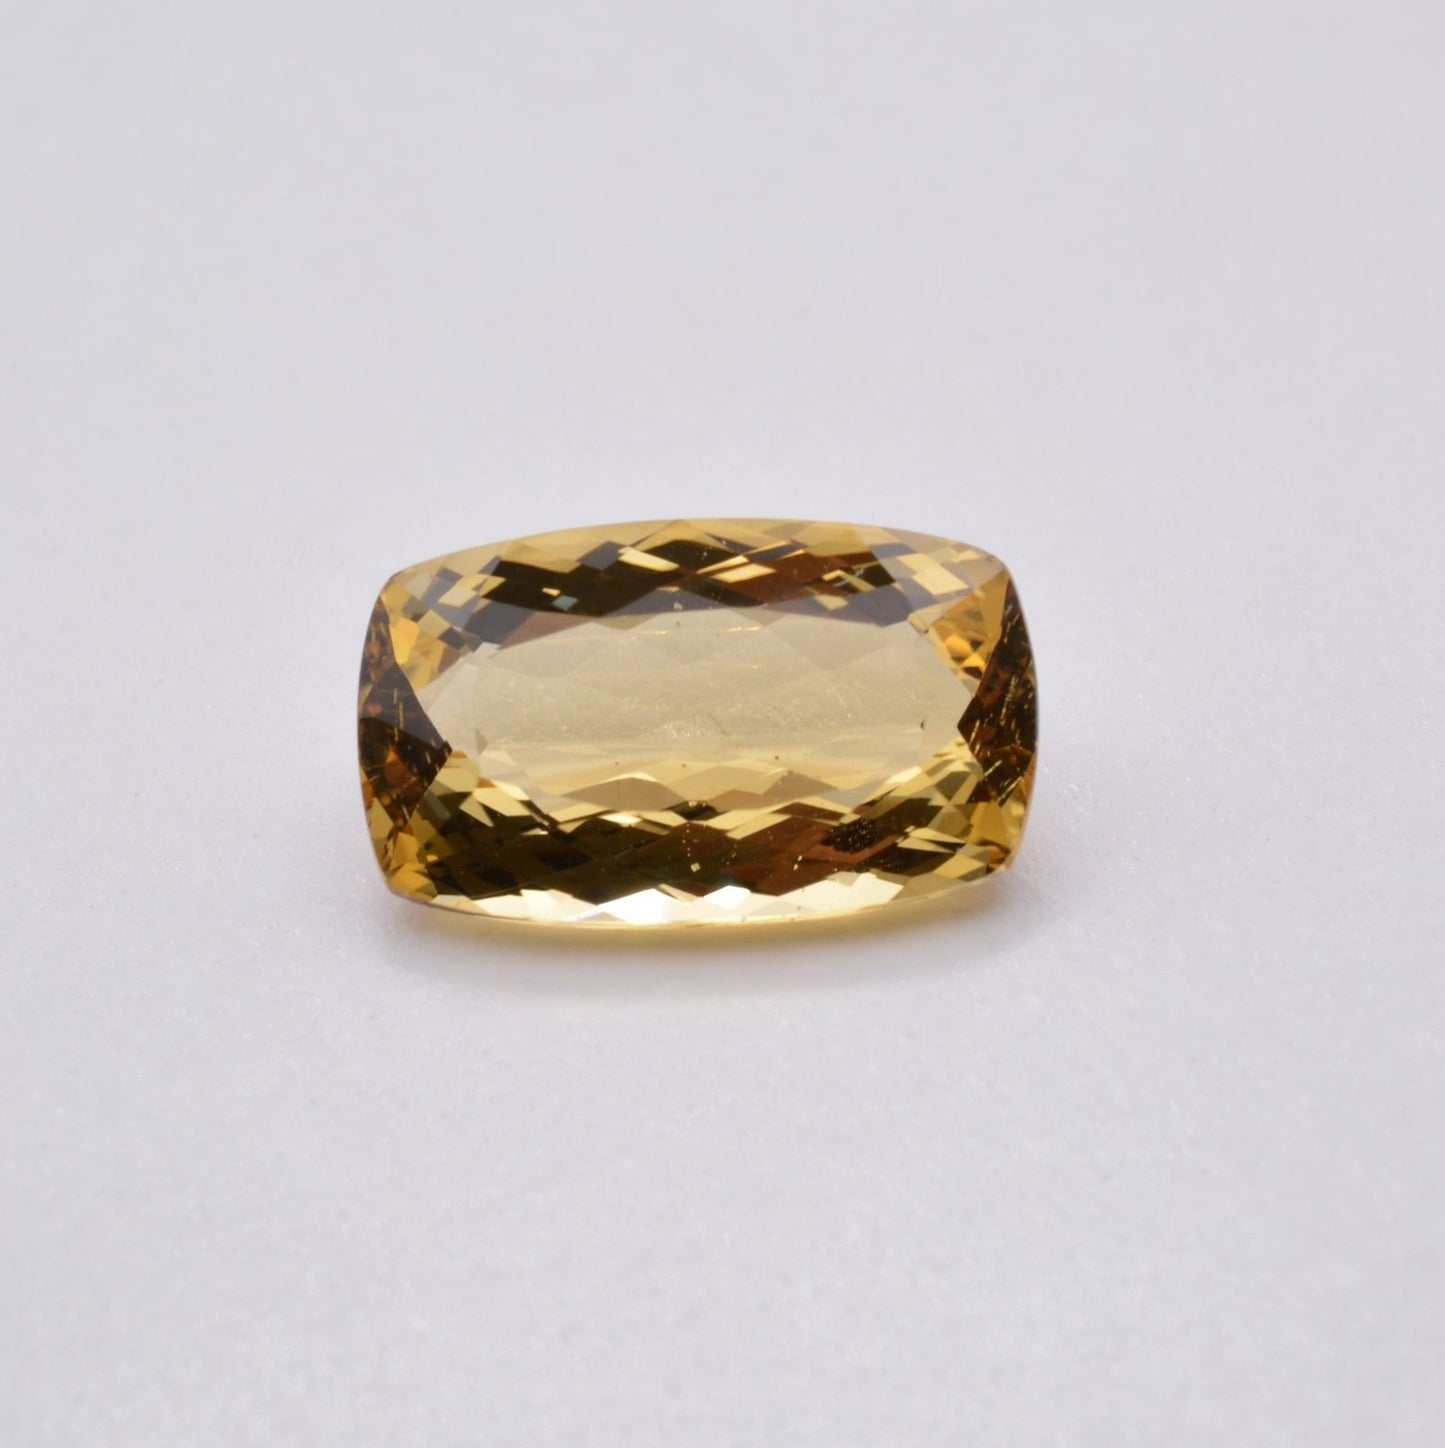 Beryl jaune - Héliodore Coussin Rectangle 4,70ct - pierre précieuse - gemme